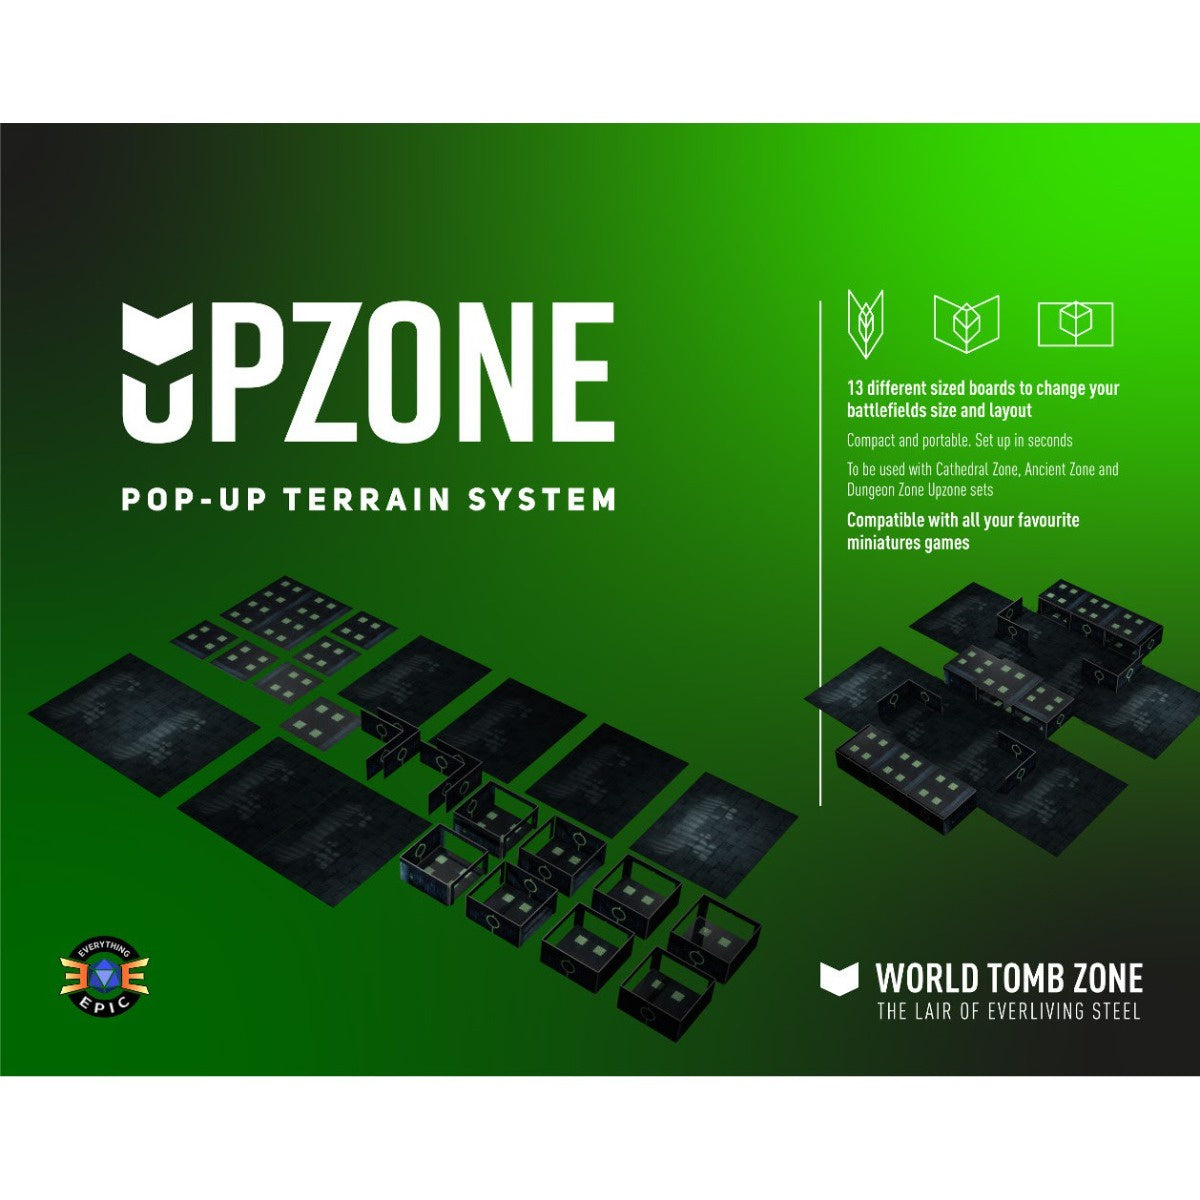 Upzone World Tomb Zone